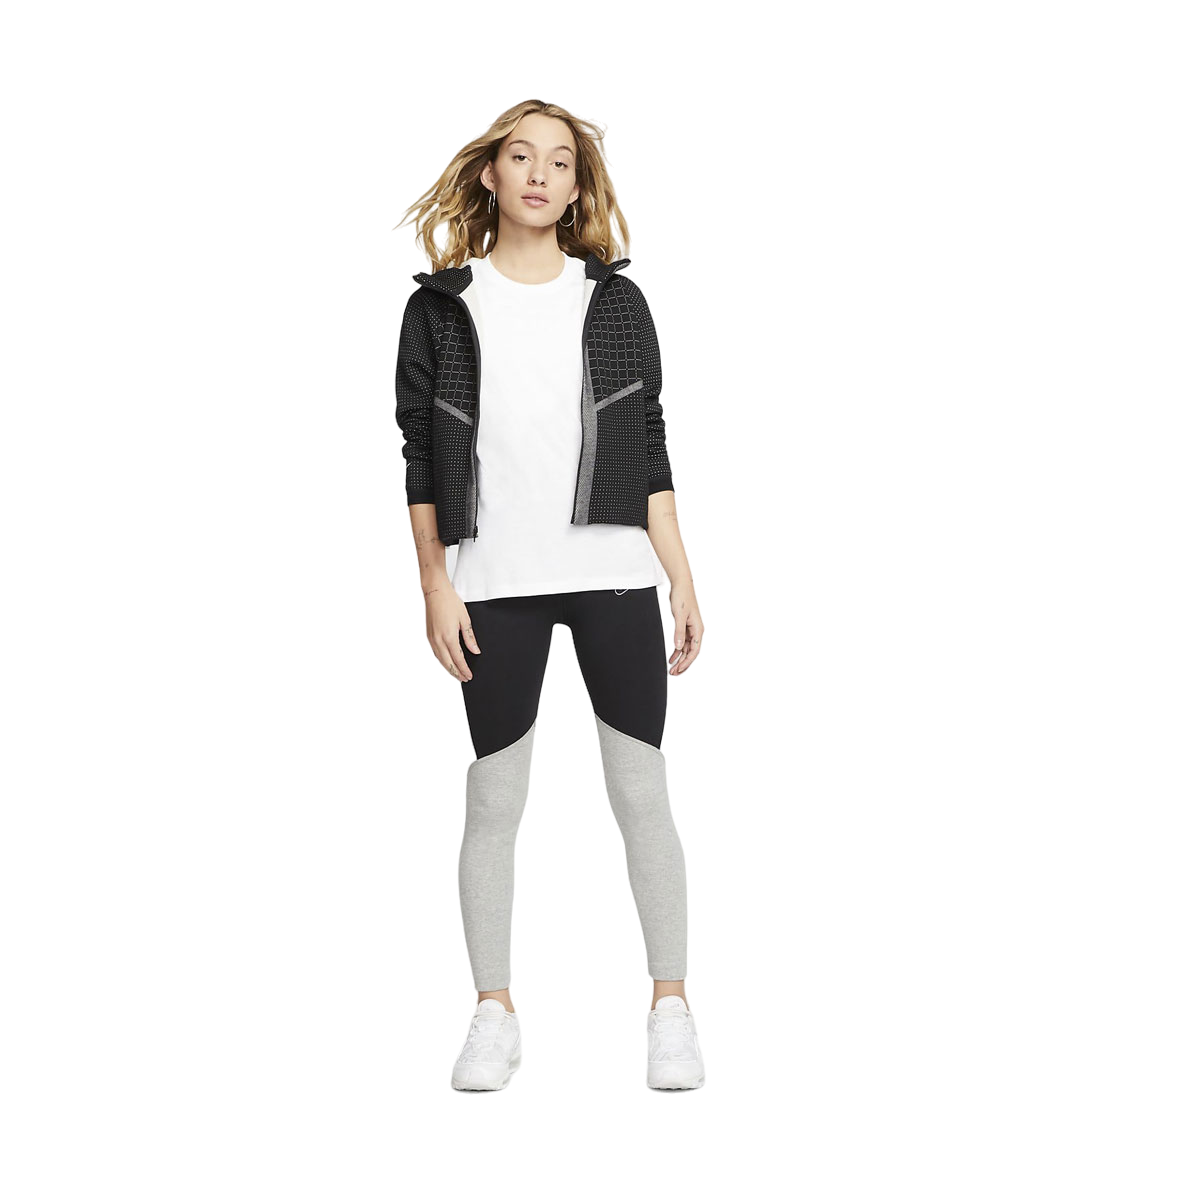 Nike Women's Sportswear Short-Sleeve Crew Top